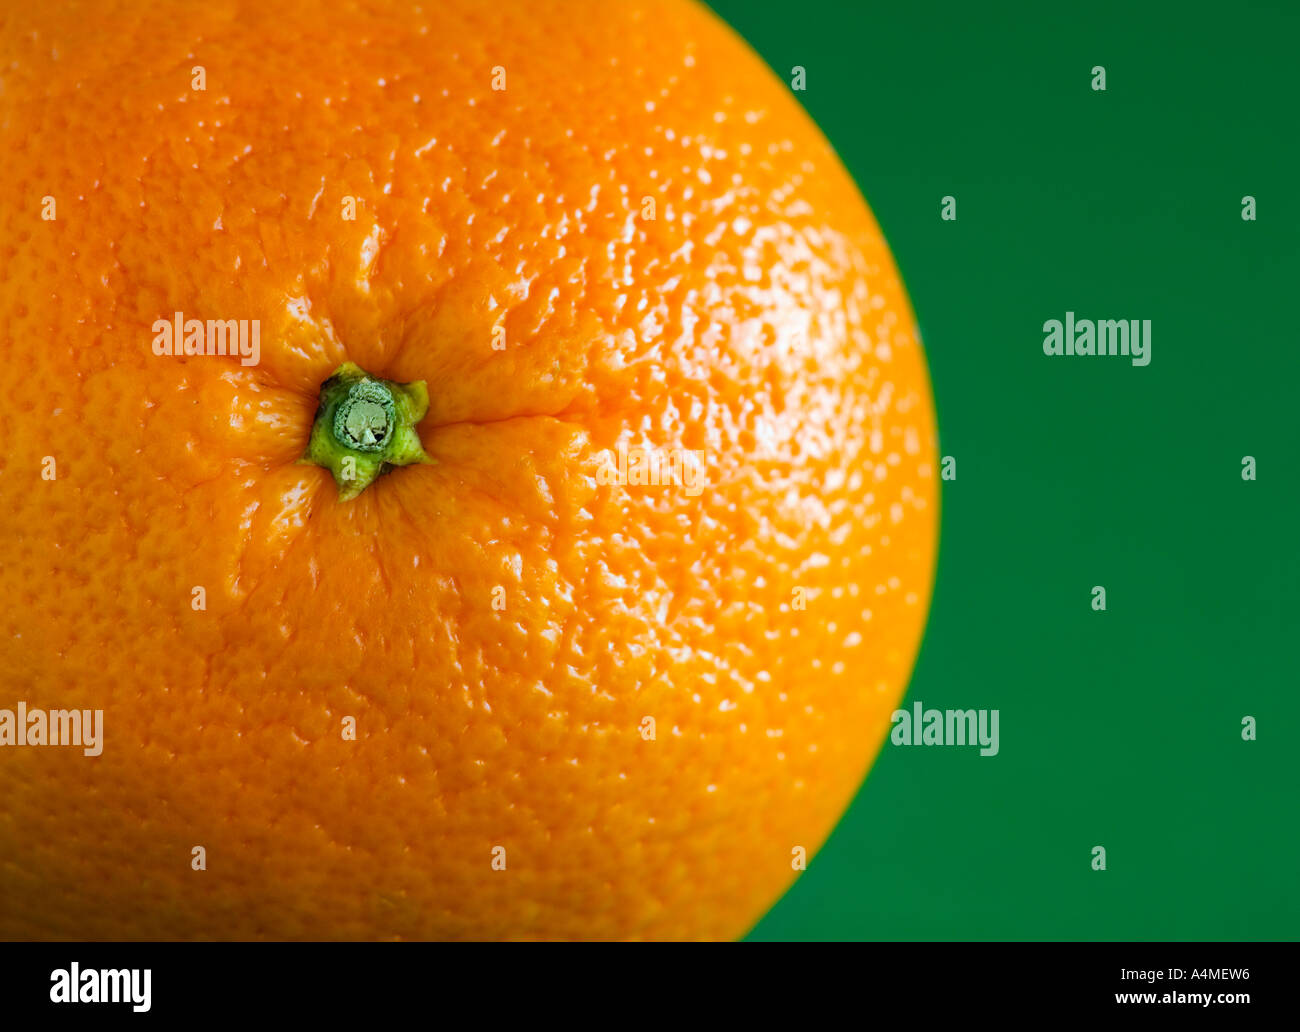 Апельсин на зеленом фоне